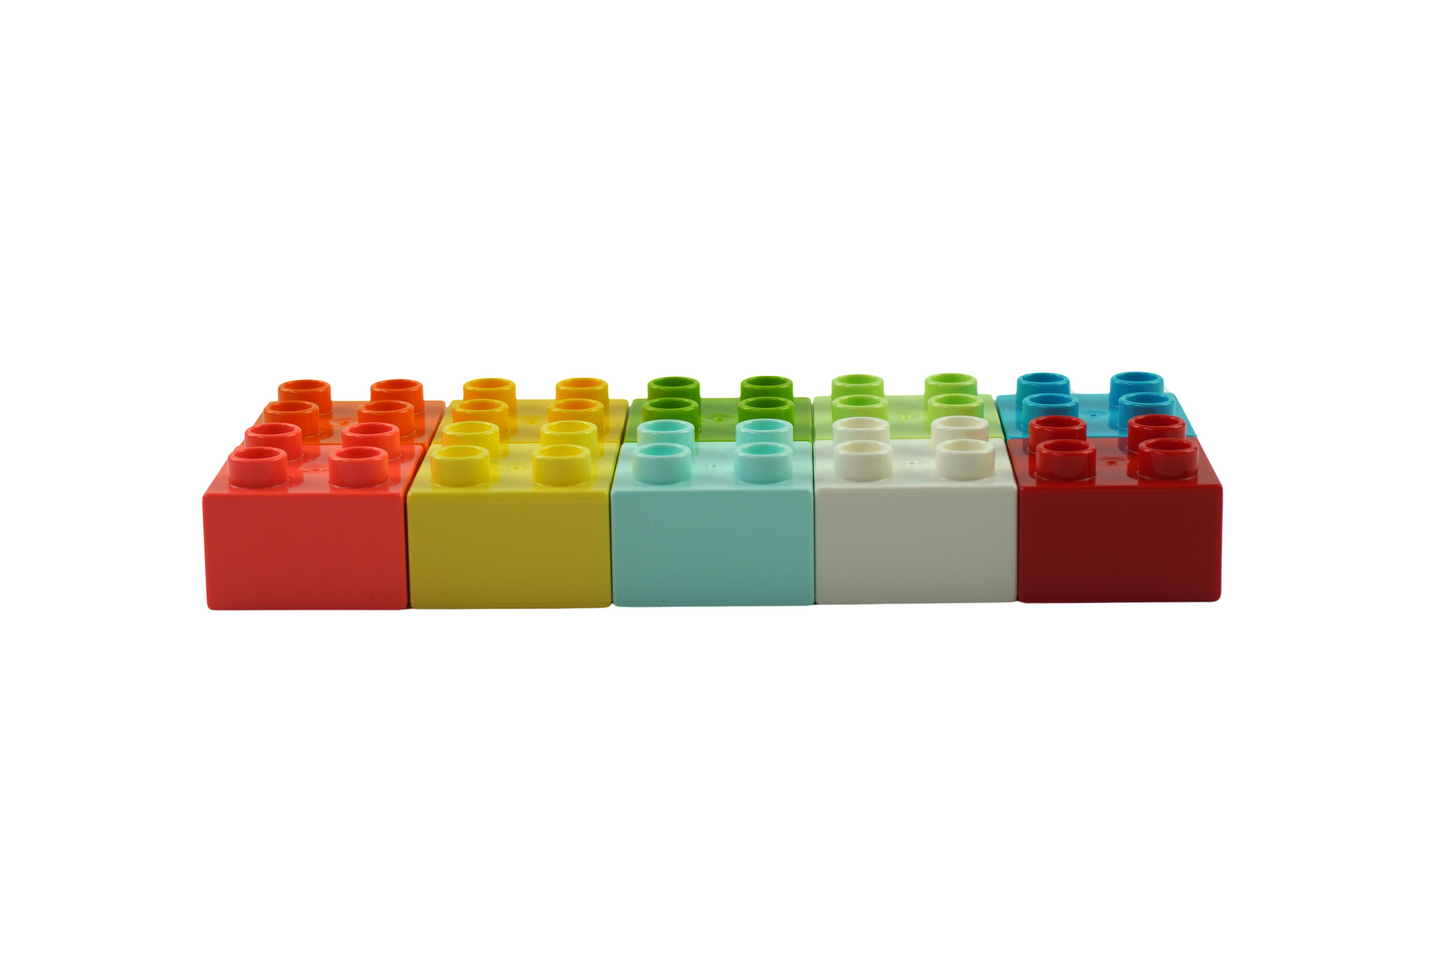 LEGO® DUPLO® 20 2x4 bricks and 30 2x2 bricks mixed colors - 3437 3011 NEW! Quantity 50x 